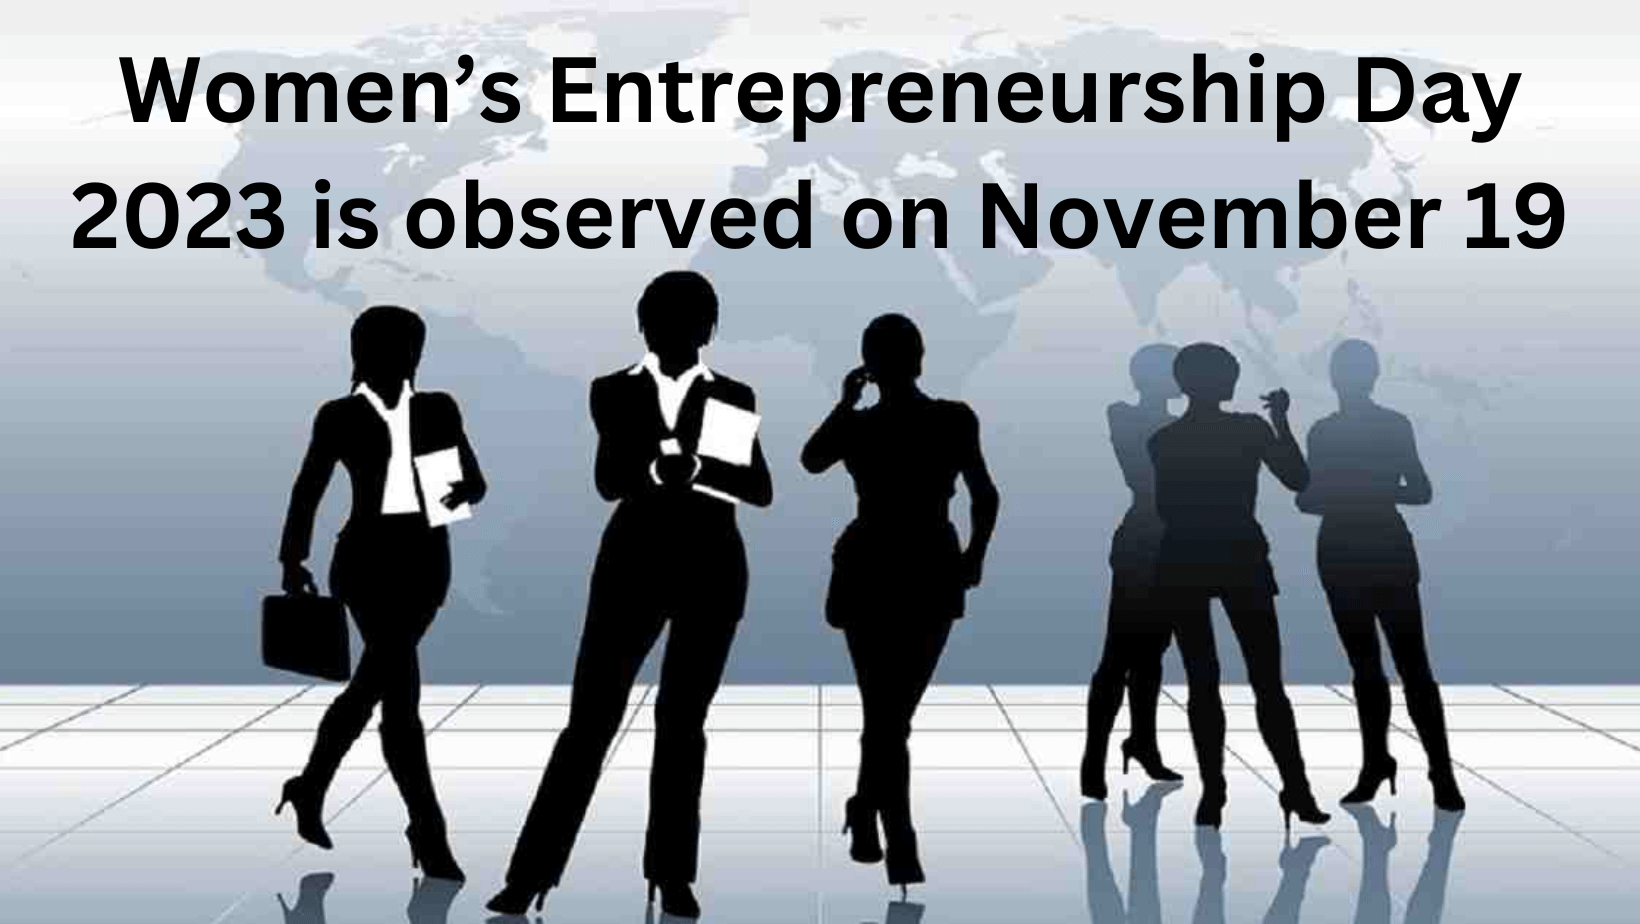 Women’s Entrepreneurship Day 2023 is observed on November 19